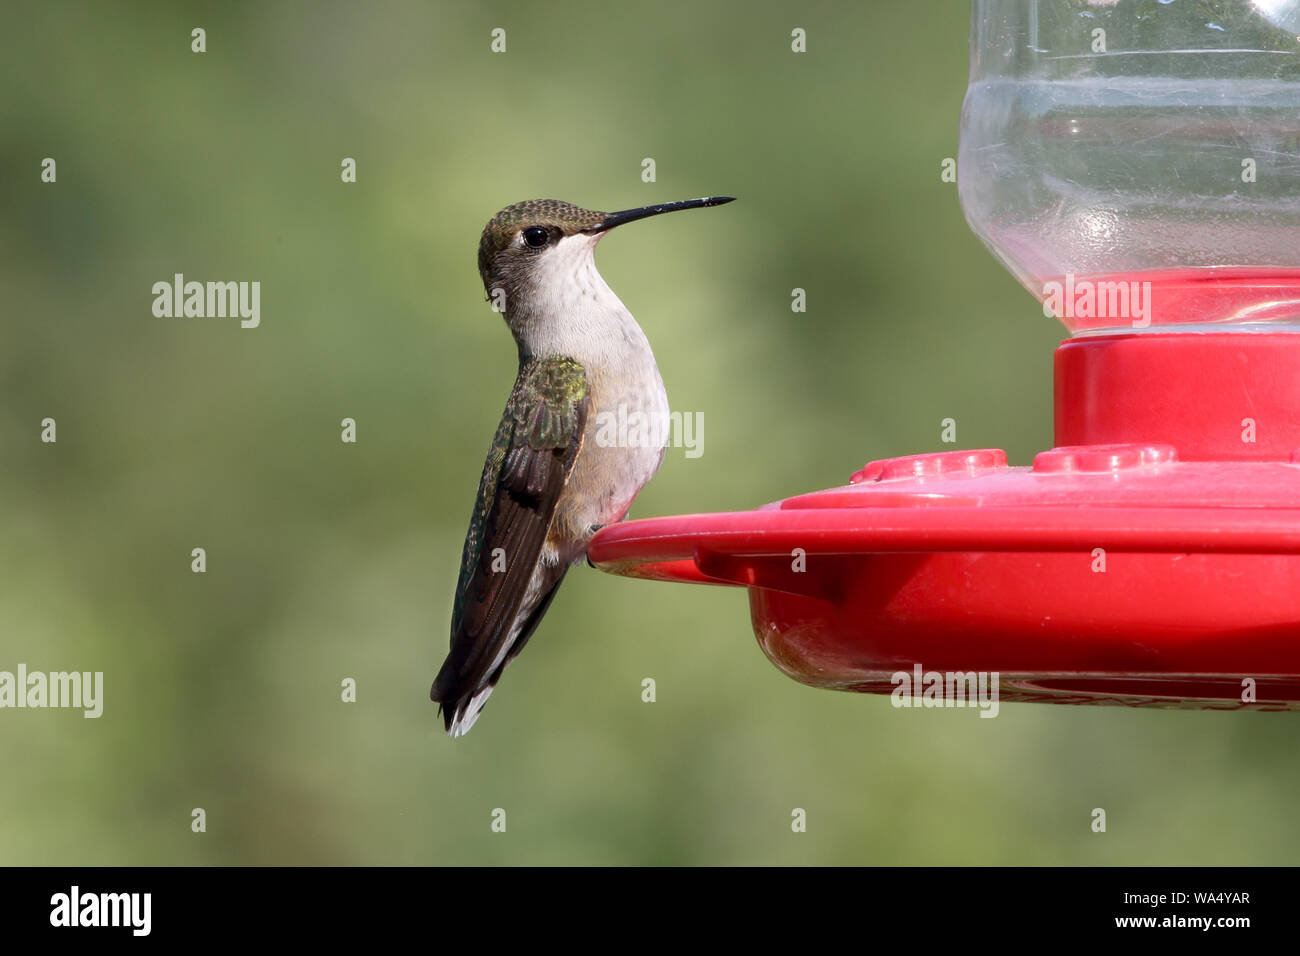 An alert little Hummingbird sits on a feeder Stock Photo